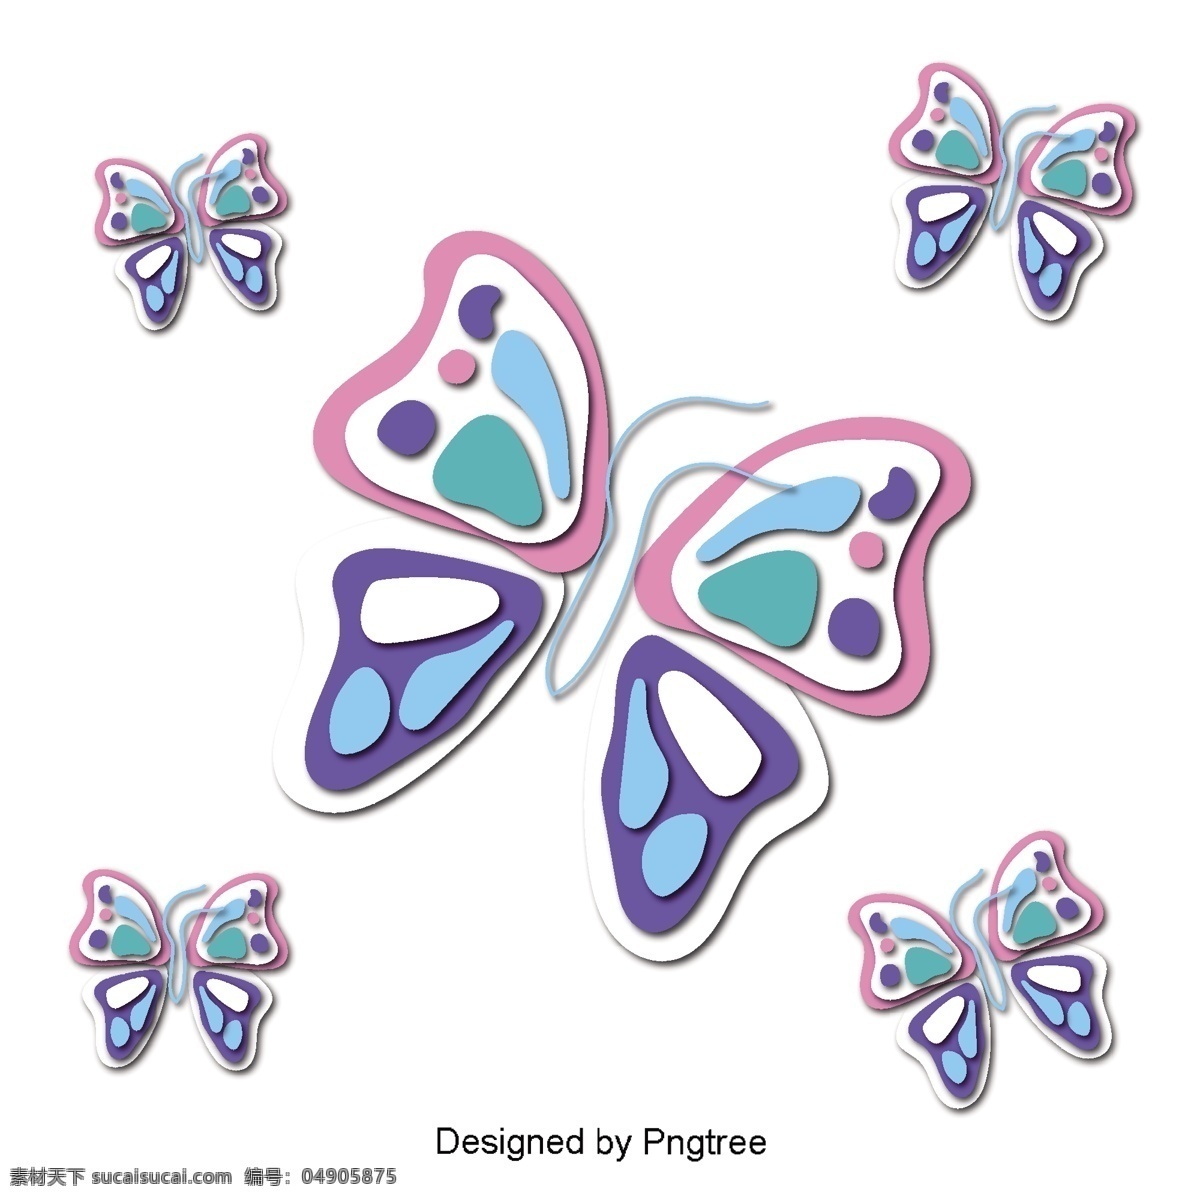 美丽 的卡 通 可爱 手绘 彩色 蝴蝶 翅膀 漂亮 卡通 平面 颜色 幻想 装饰